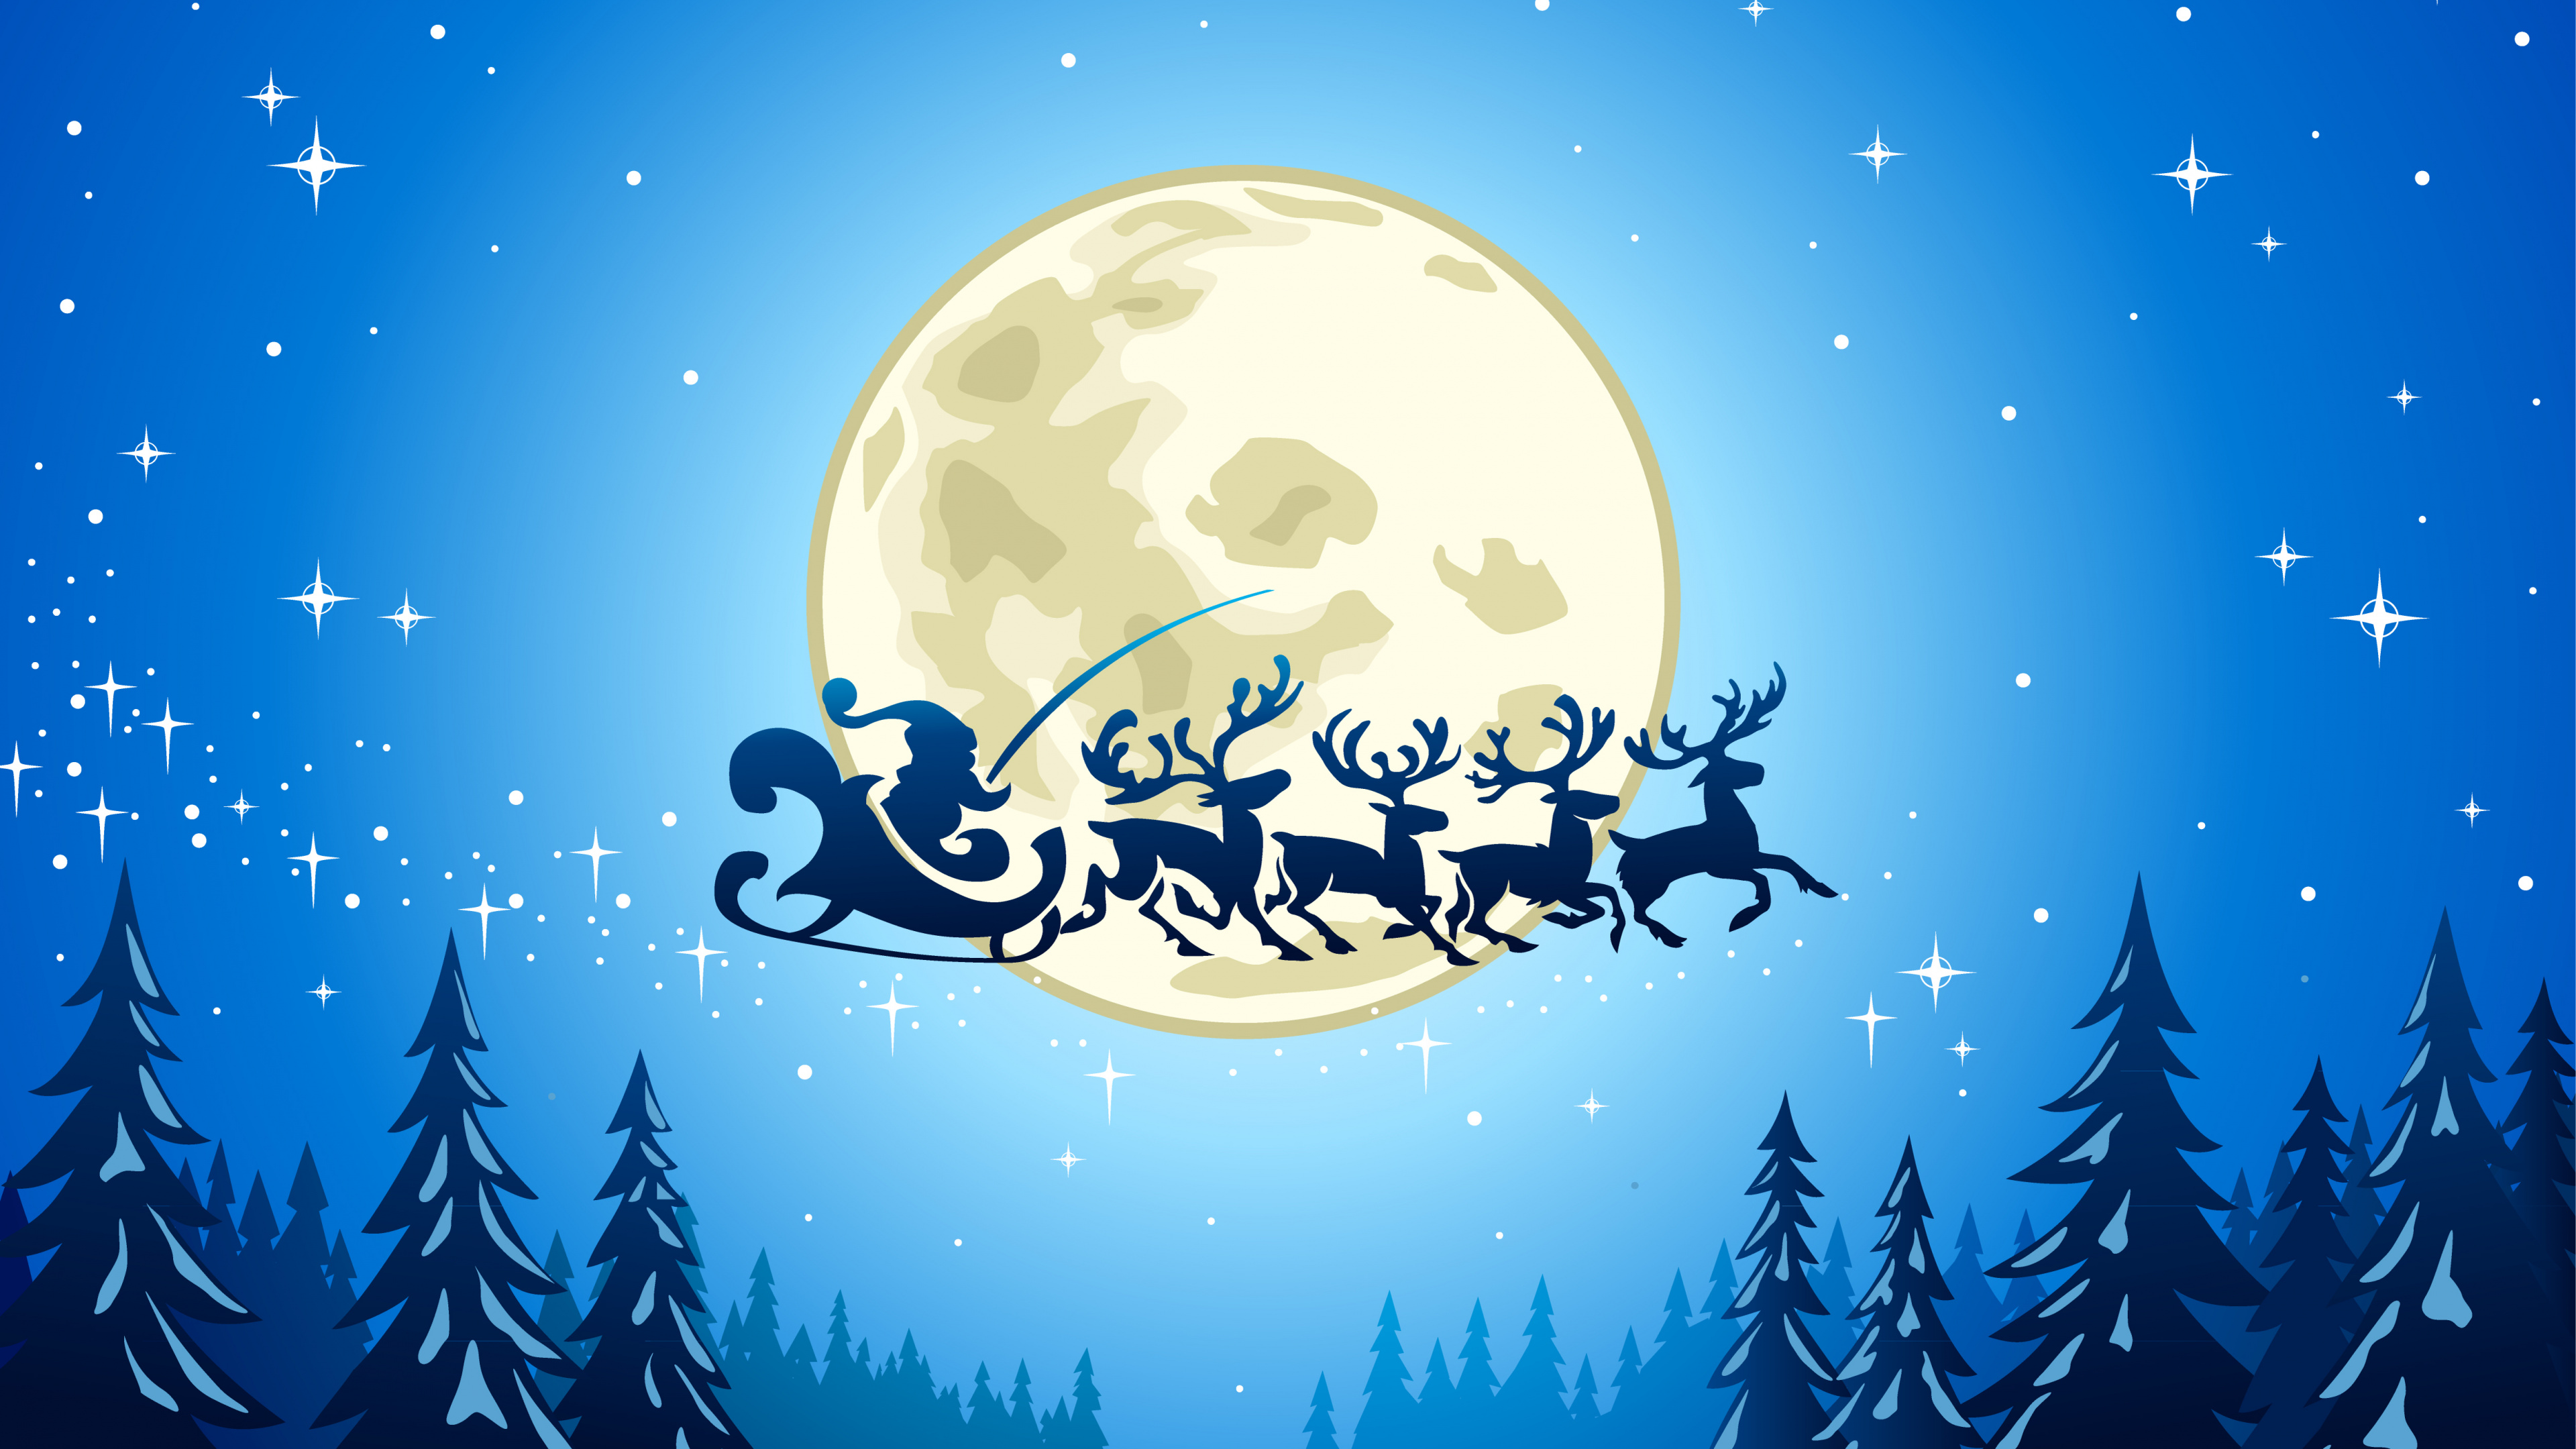 Le Jour De Noël, Santa Claus, Illustration, Ded Moroz, Blue. Wallpaper in 3840x2160 Resolution